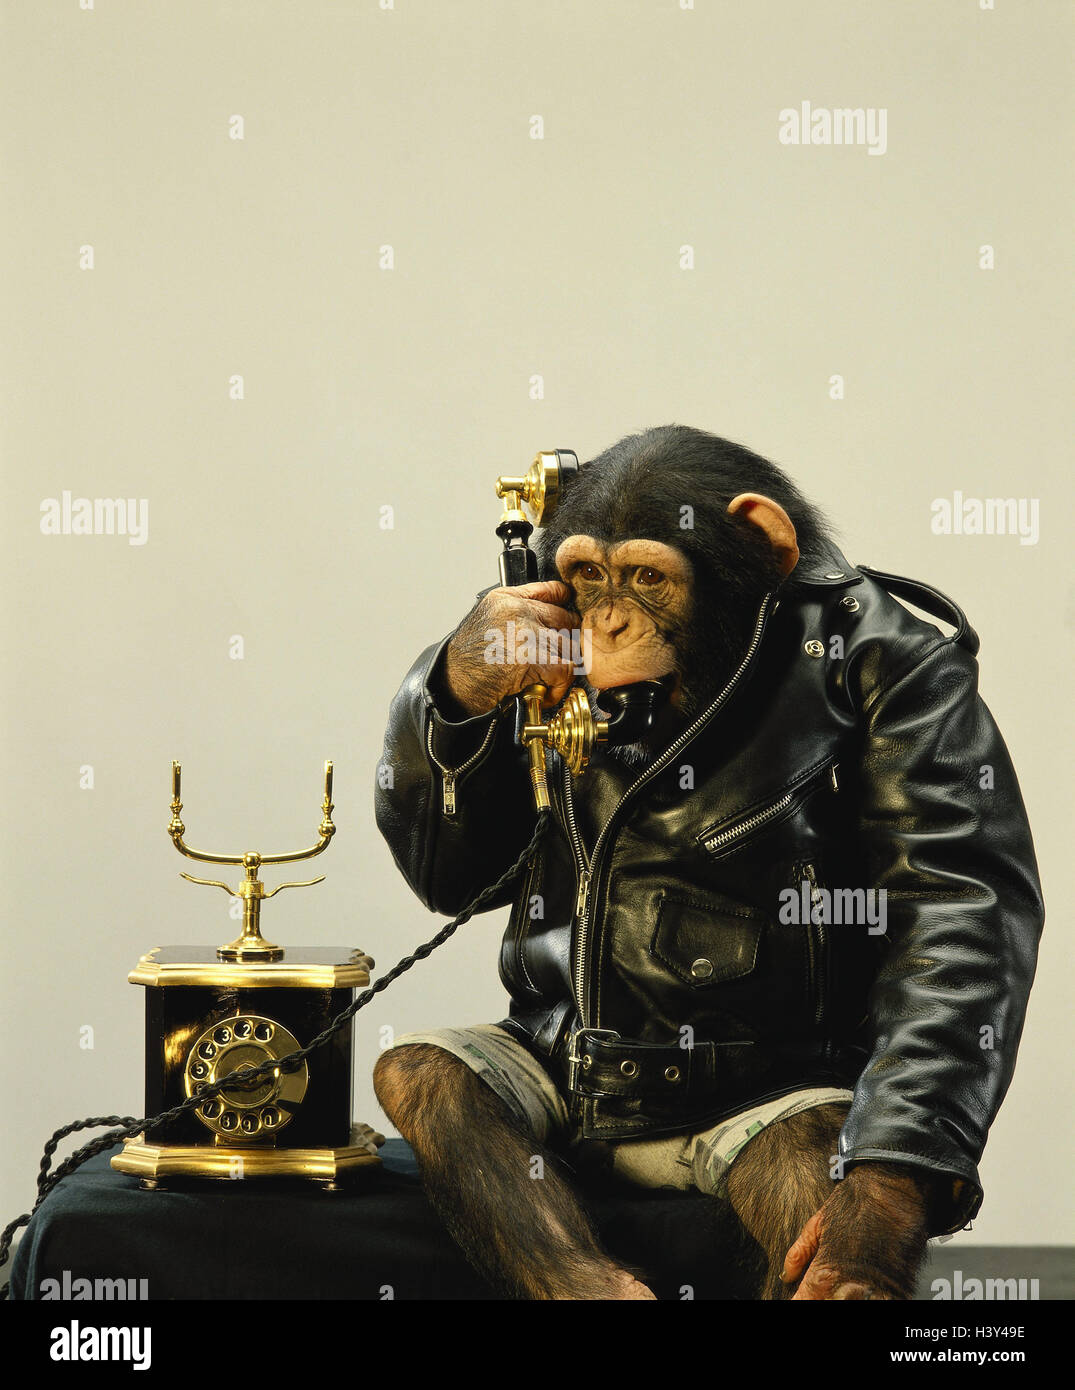 Monkey jacket Banque de photographies et d'images à haute résolution - Alamy